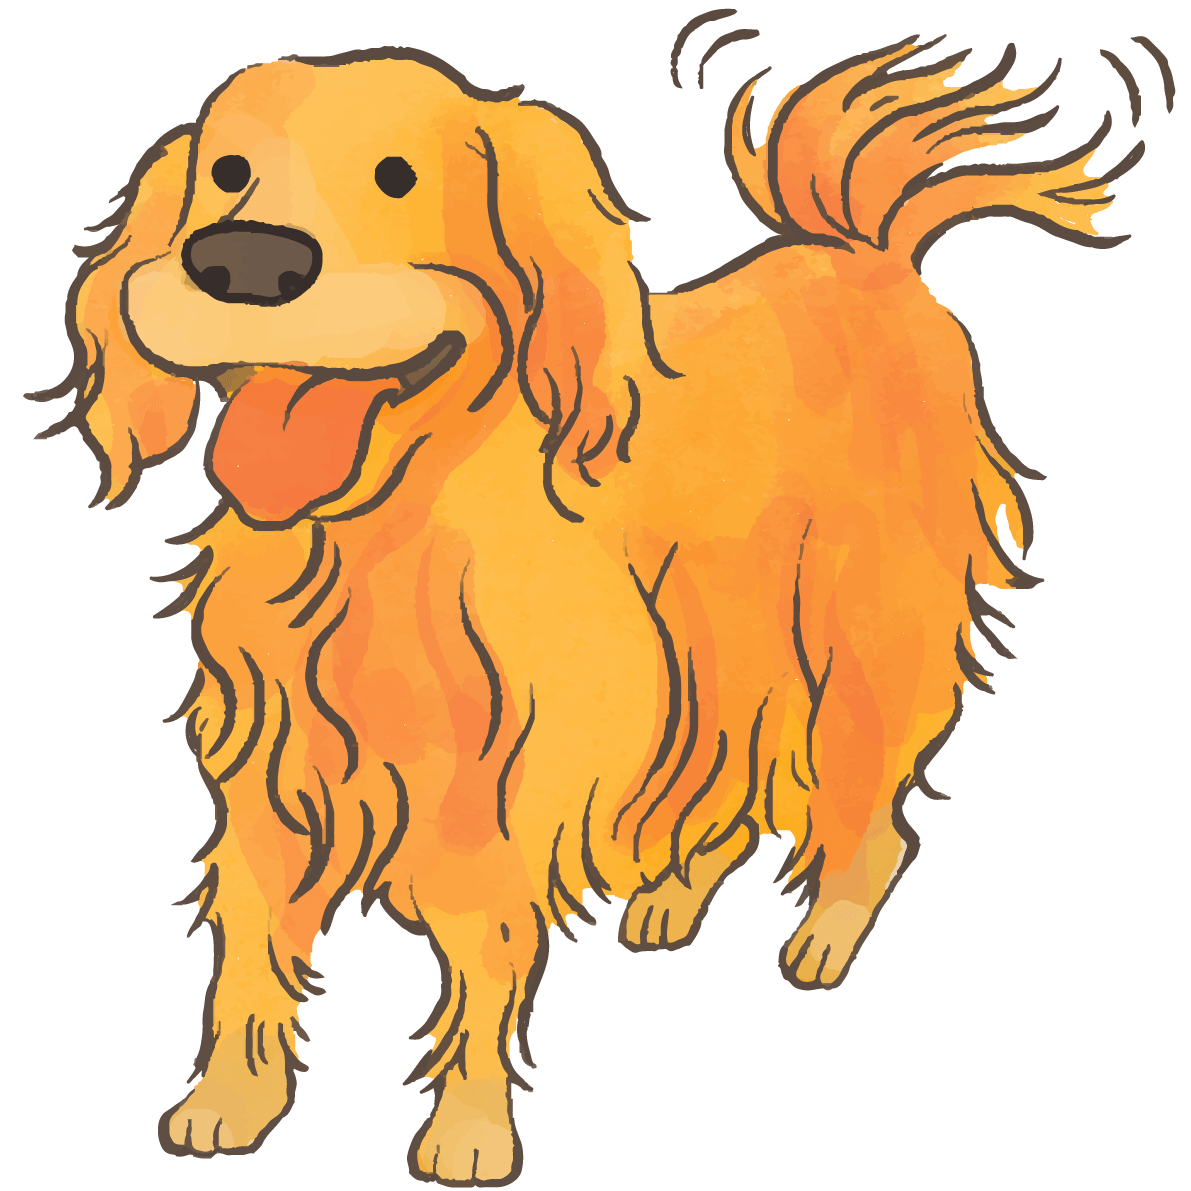 ゴールデンレトリバー 尻尾を振る かわいい犬 イラスト素材 超多くの無料かわいいイラスト素材